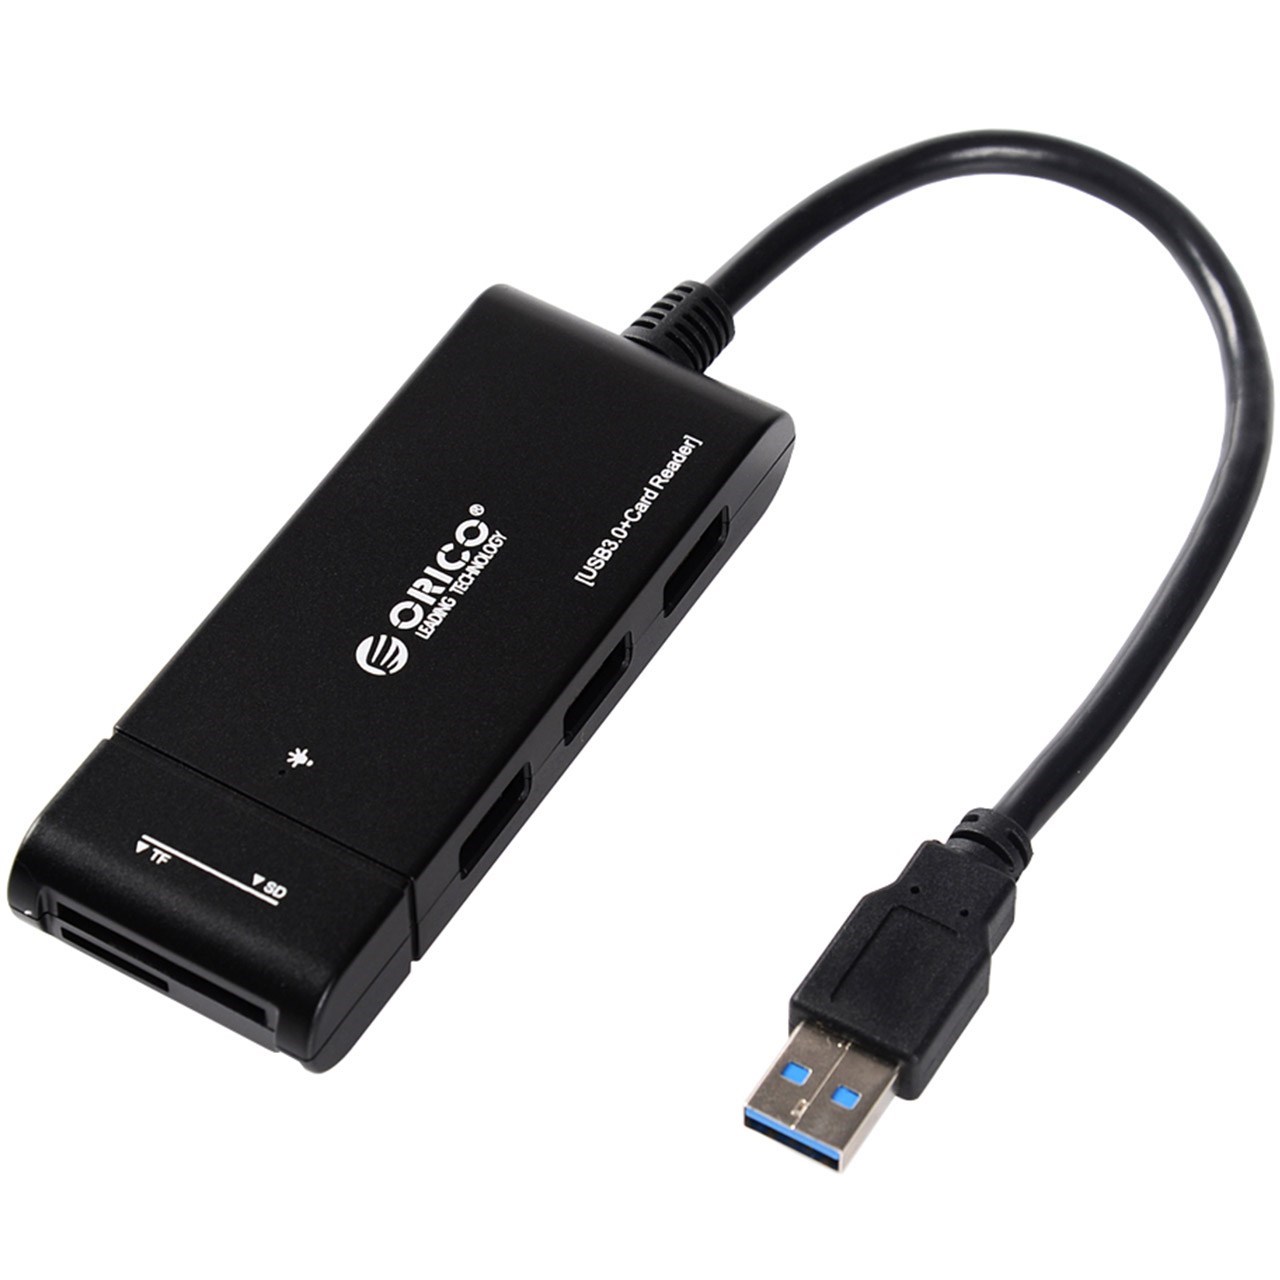 هاب USB 3.0 سه پورت همراه با کارت خوان اوریکو مدل H32TS-U3